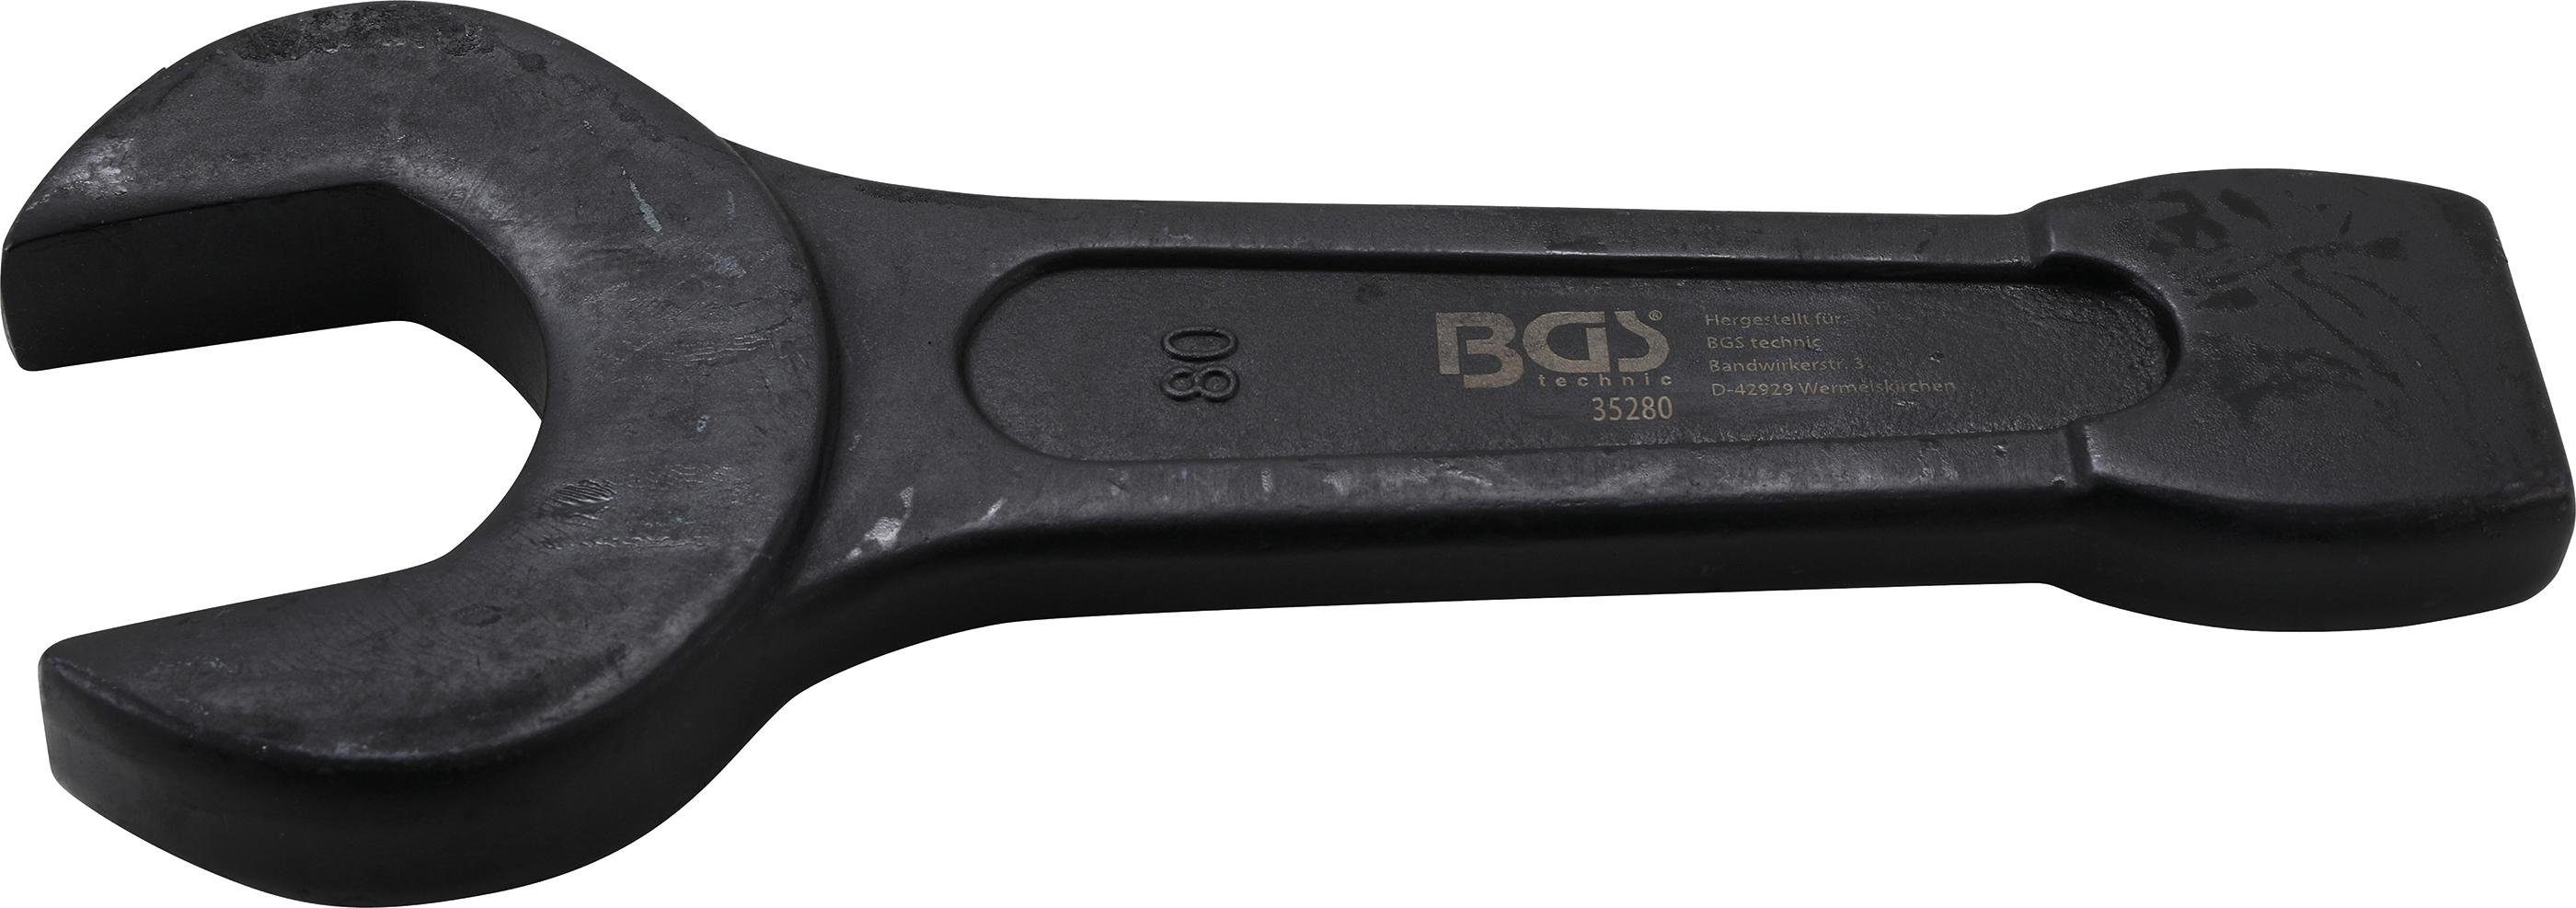 BGS technic Maulschlüssel Schlag-Maulschlüssel, SW 80 mm